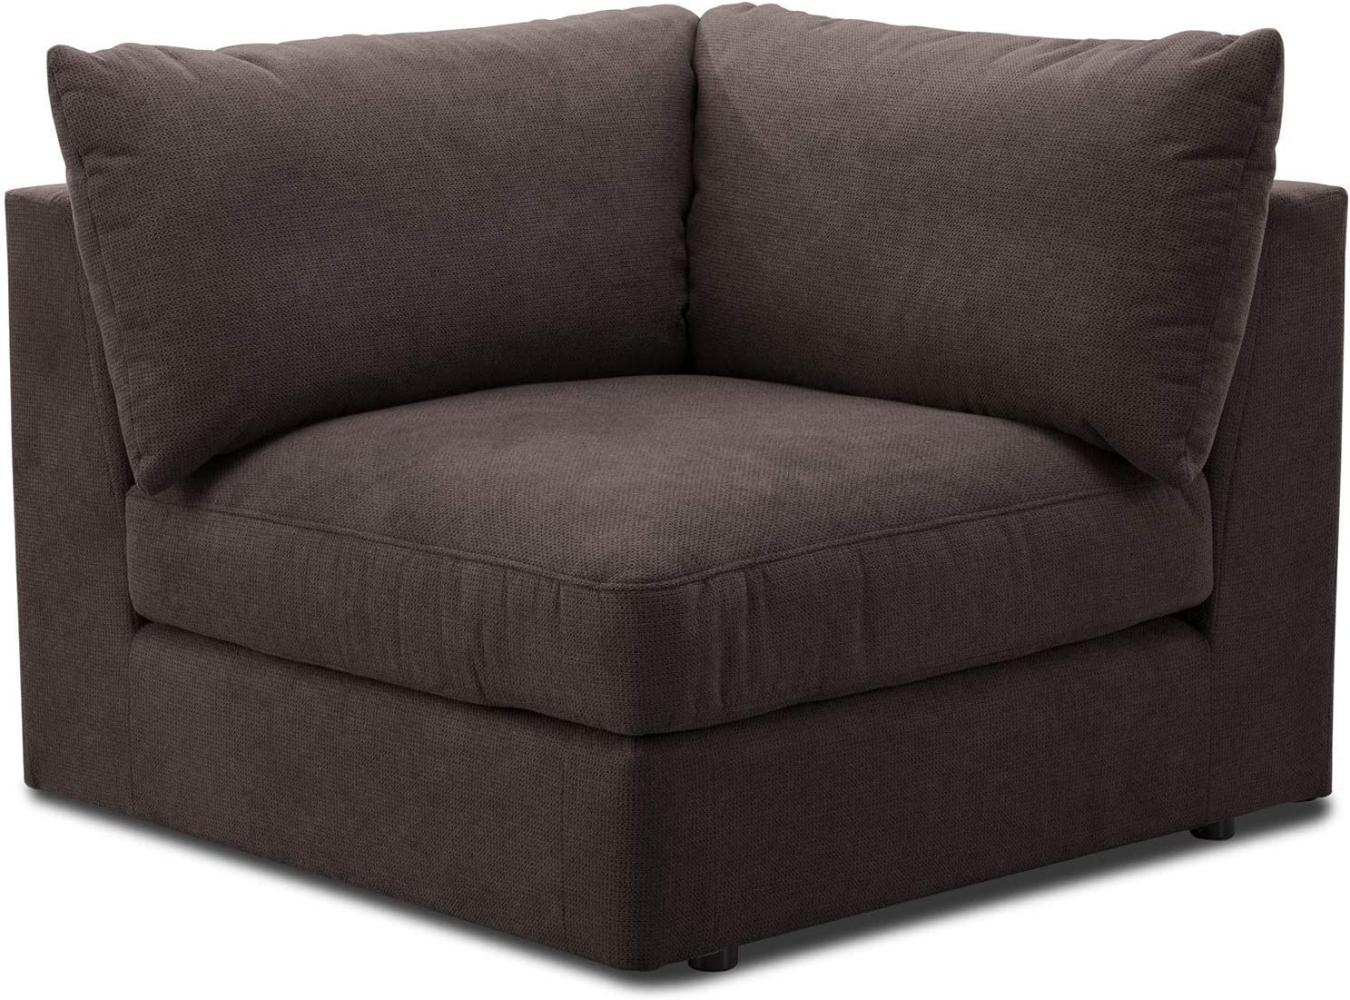 CAVADORE Sofa-Modul "Fiona" Spitzecke / Ecke für Wohnlandschaft oder XXL-Sessel / 107 x 90 x 107 / Webstoff dunkelbraun Bild 1